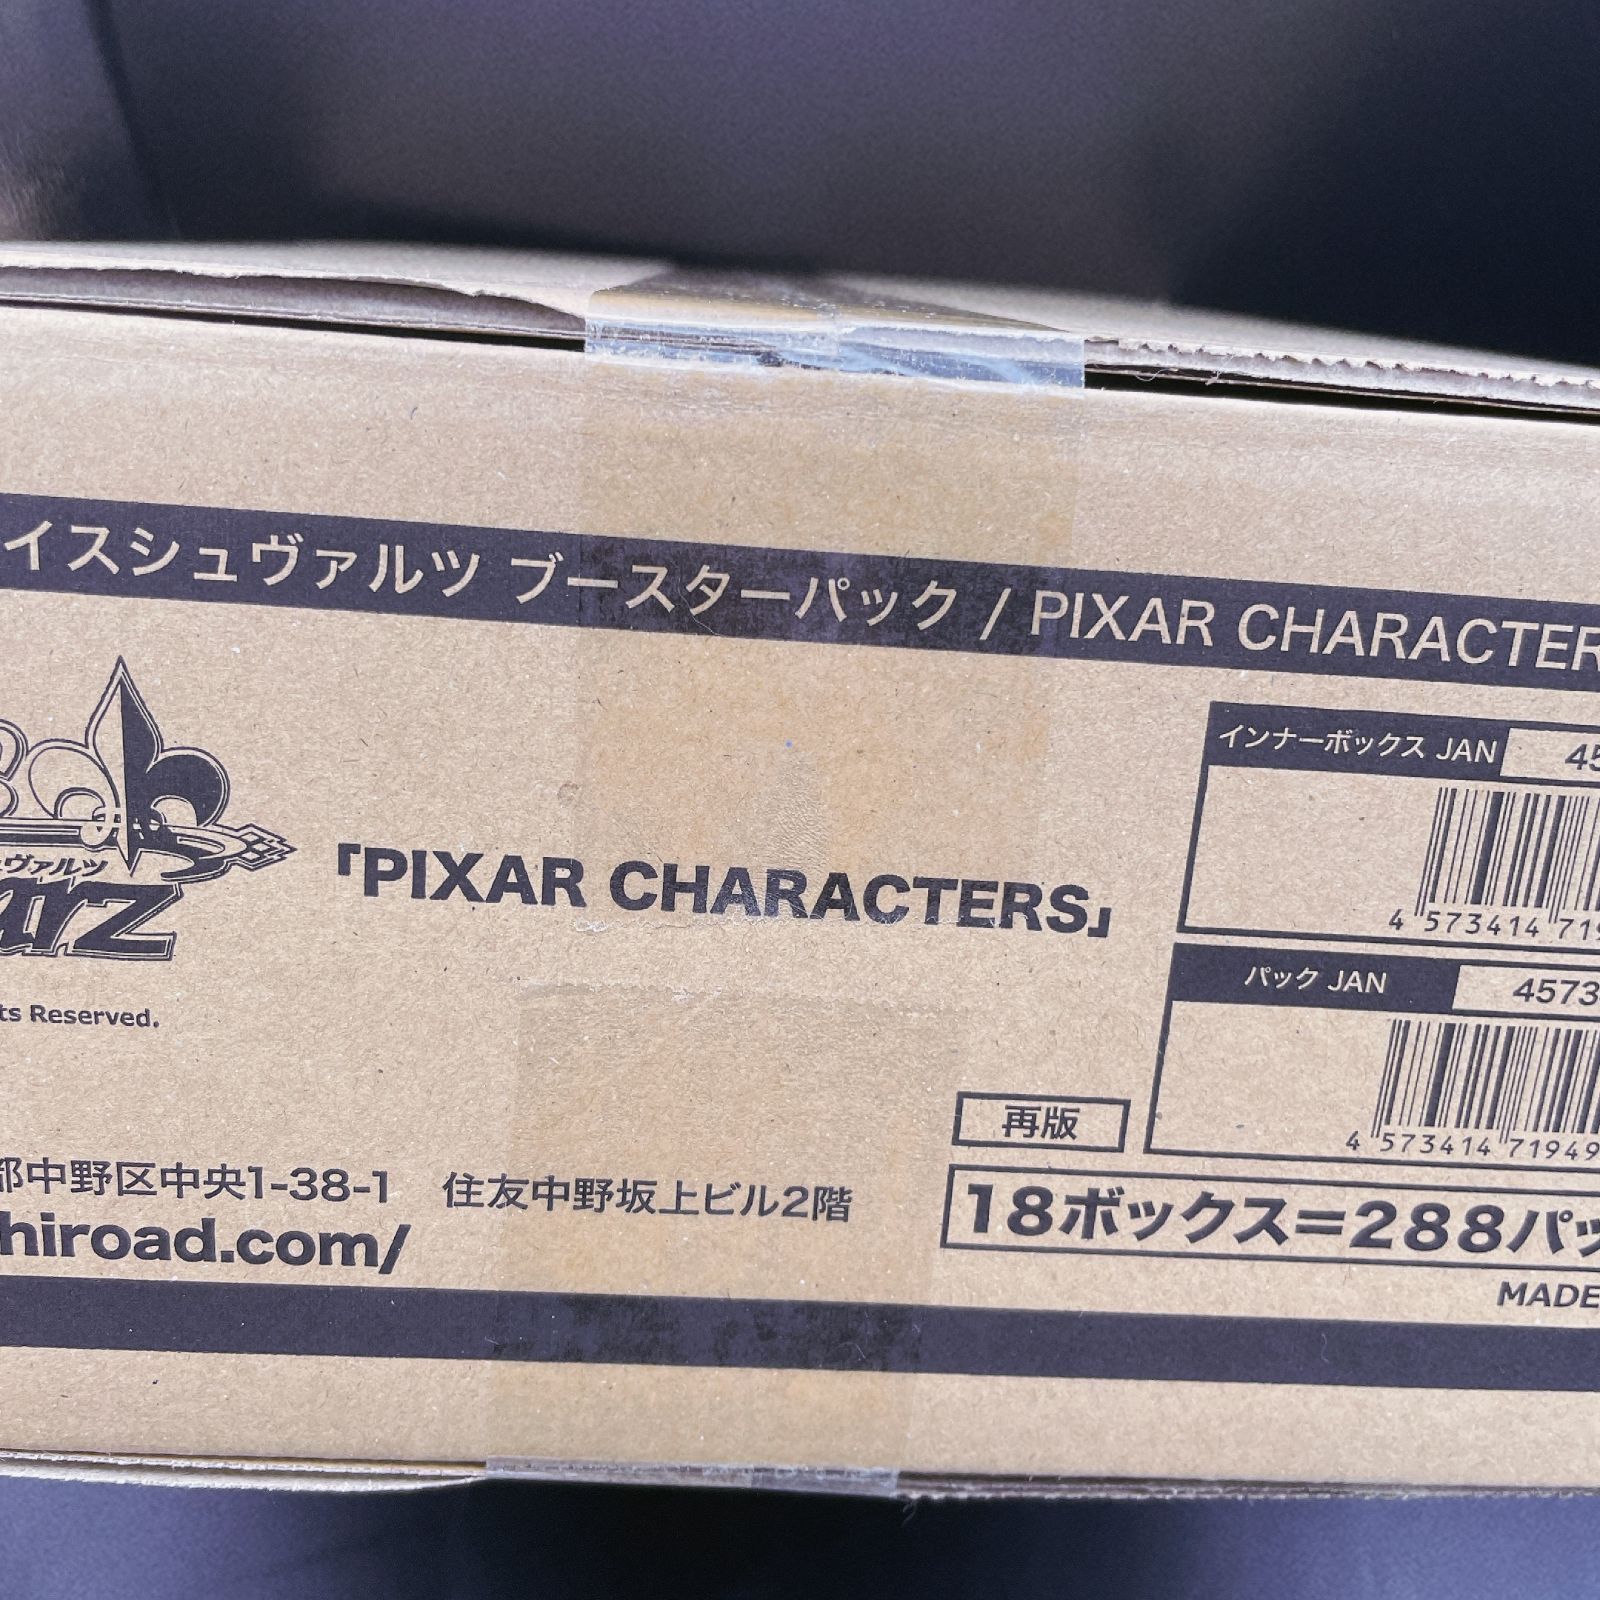 ヴァイスシュヴァルツ Pixar ピクサー 未開封1カートン